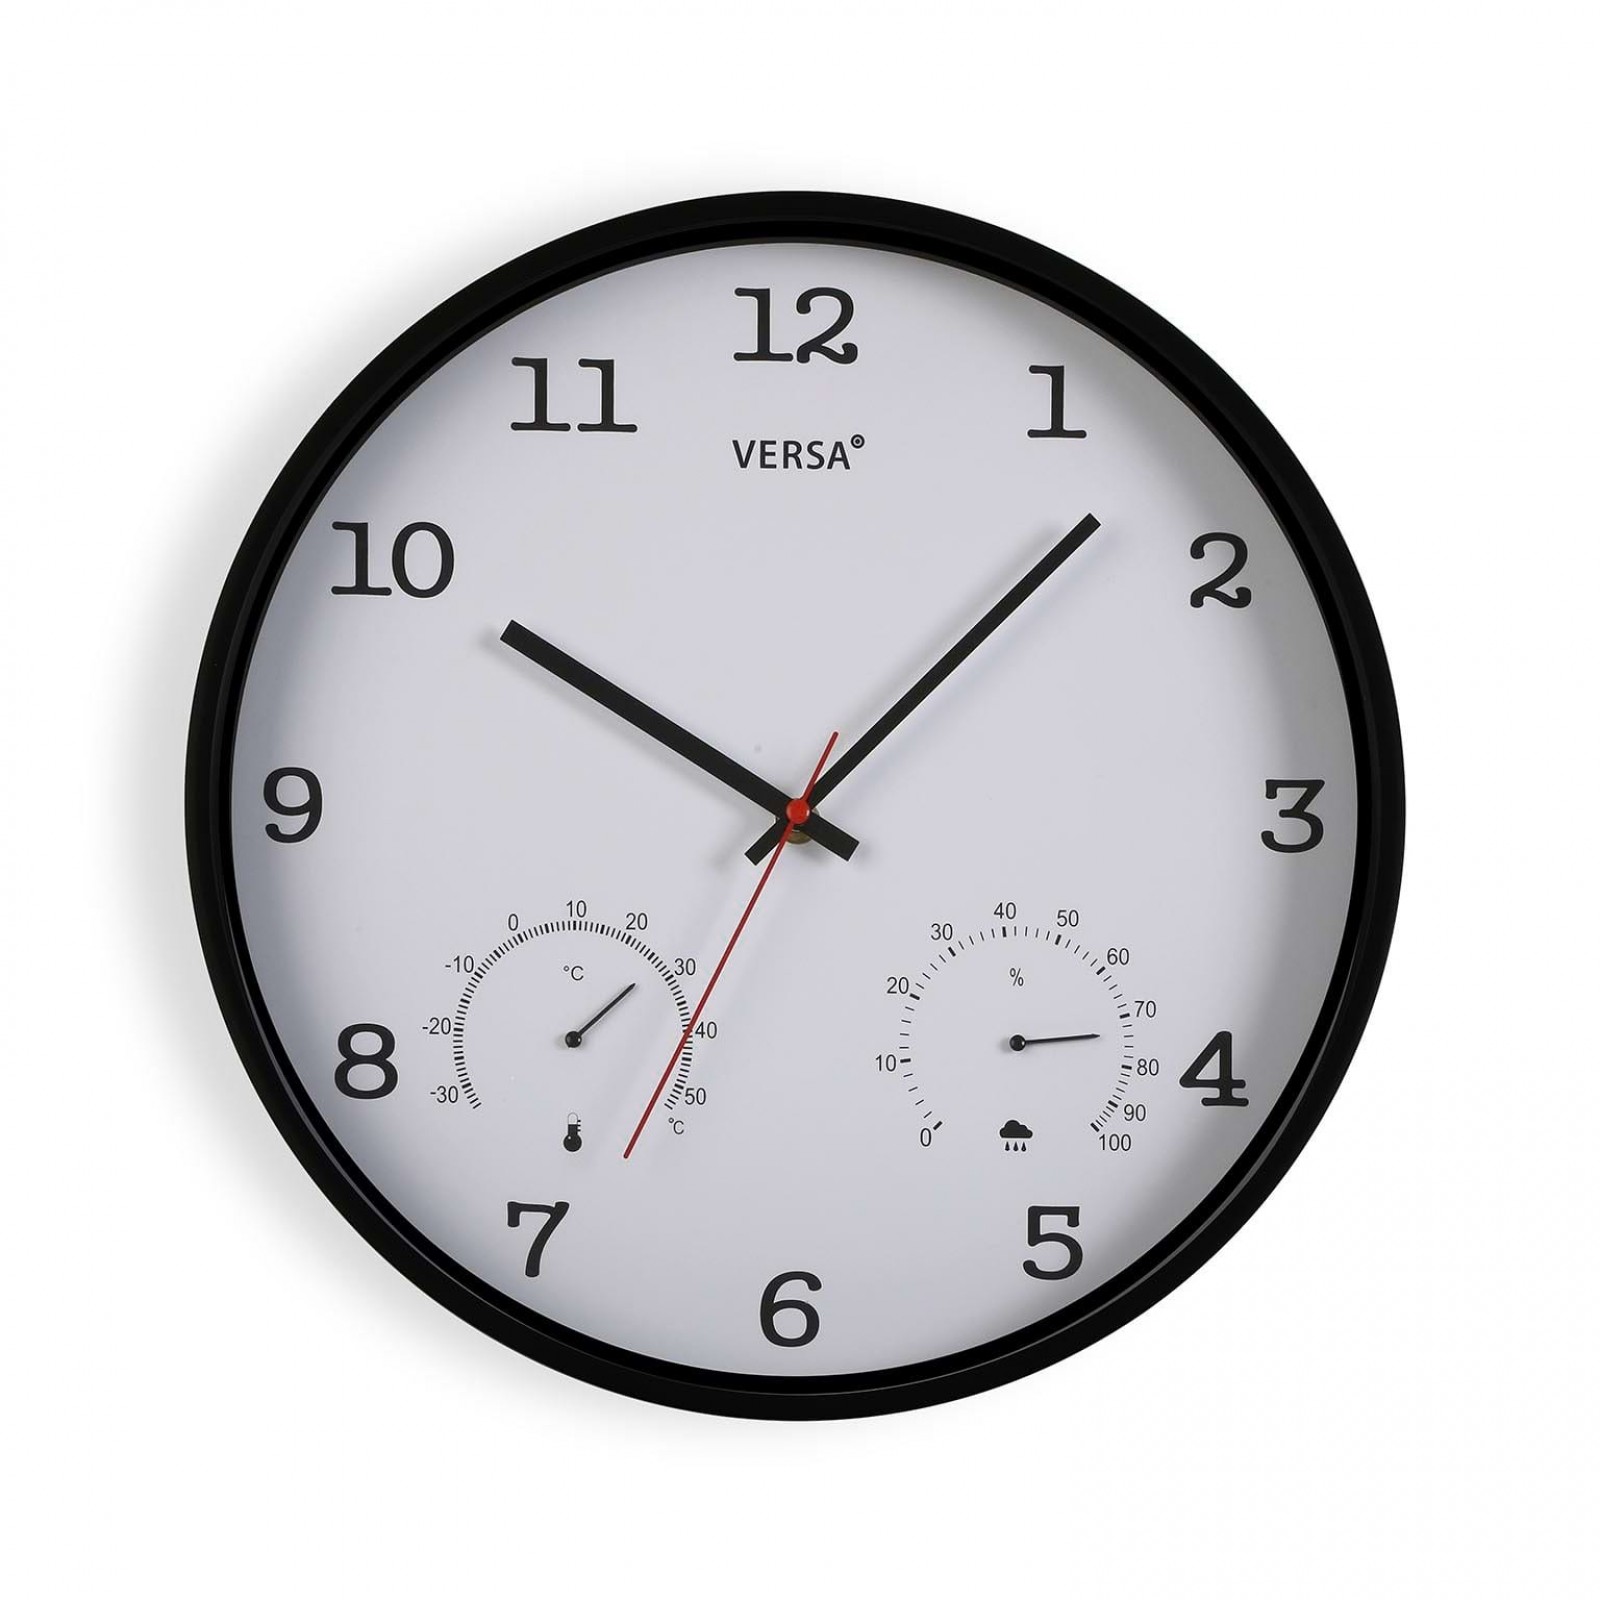 Ρολόι Τοίχου με Θερμόμετρο και Υγρόμετρο (Λευκό) - Versa